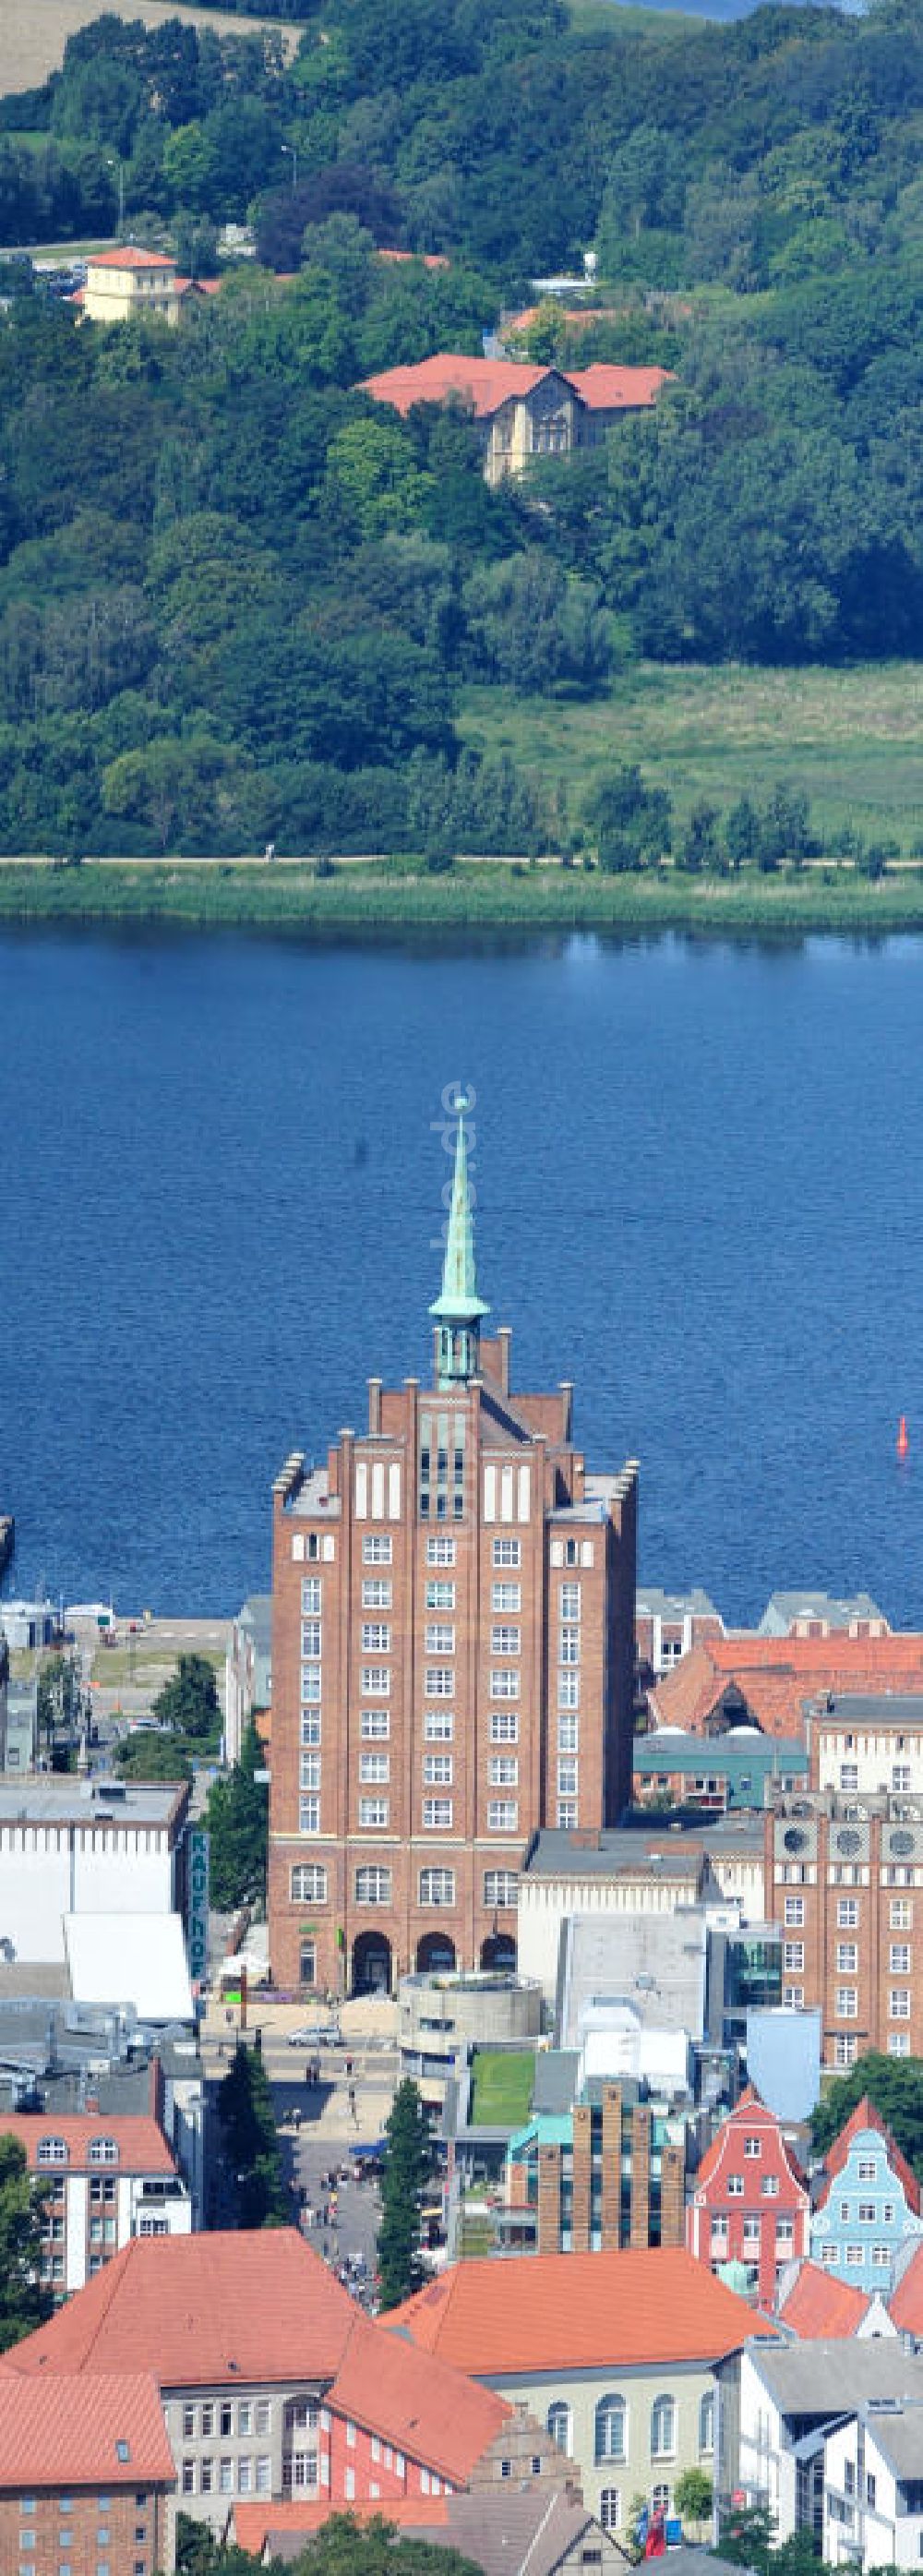 Luftaufnahme Rostock - Kröpeliner Tor am Warnowufer der Altstadt von Rostock